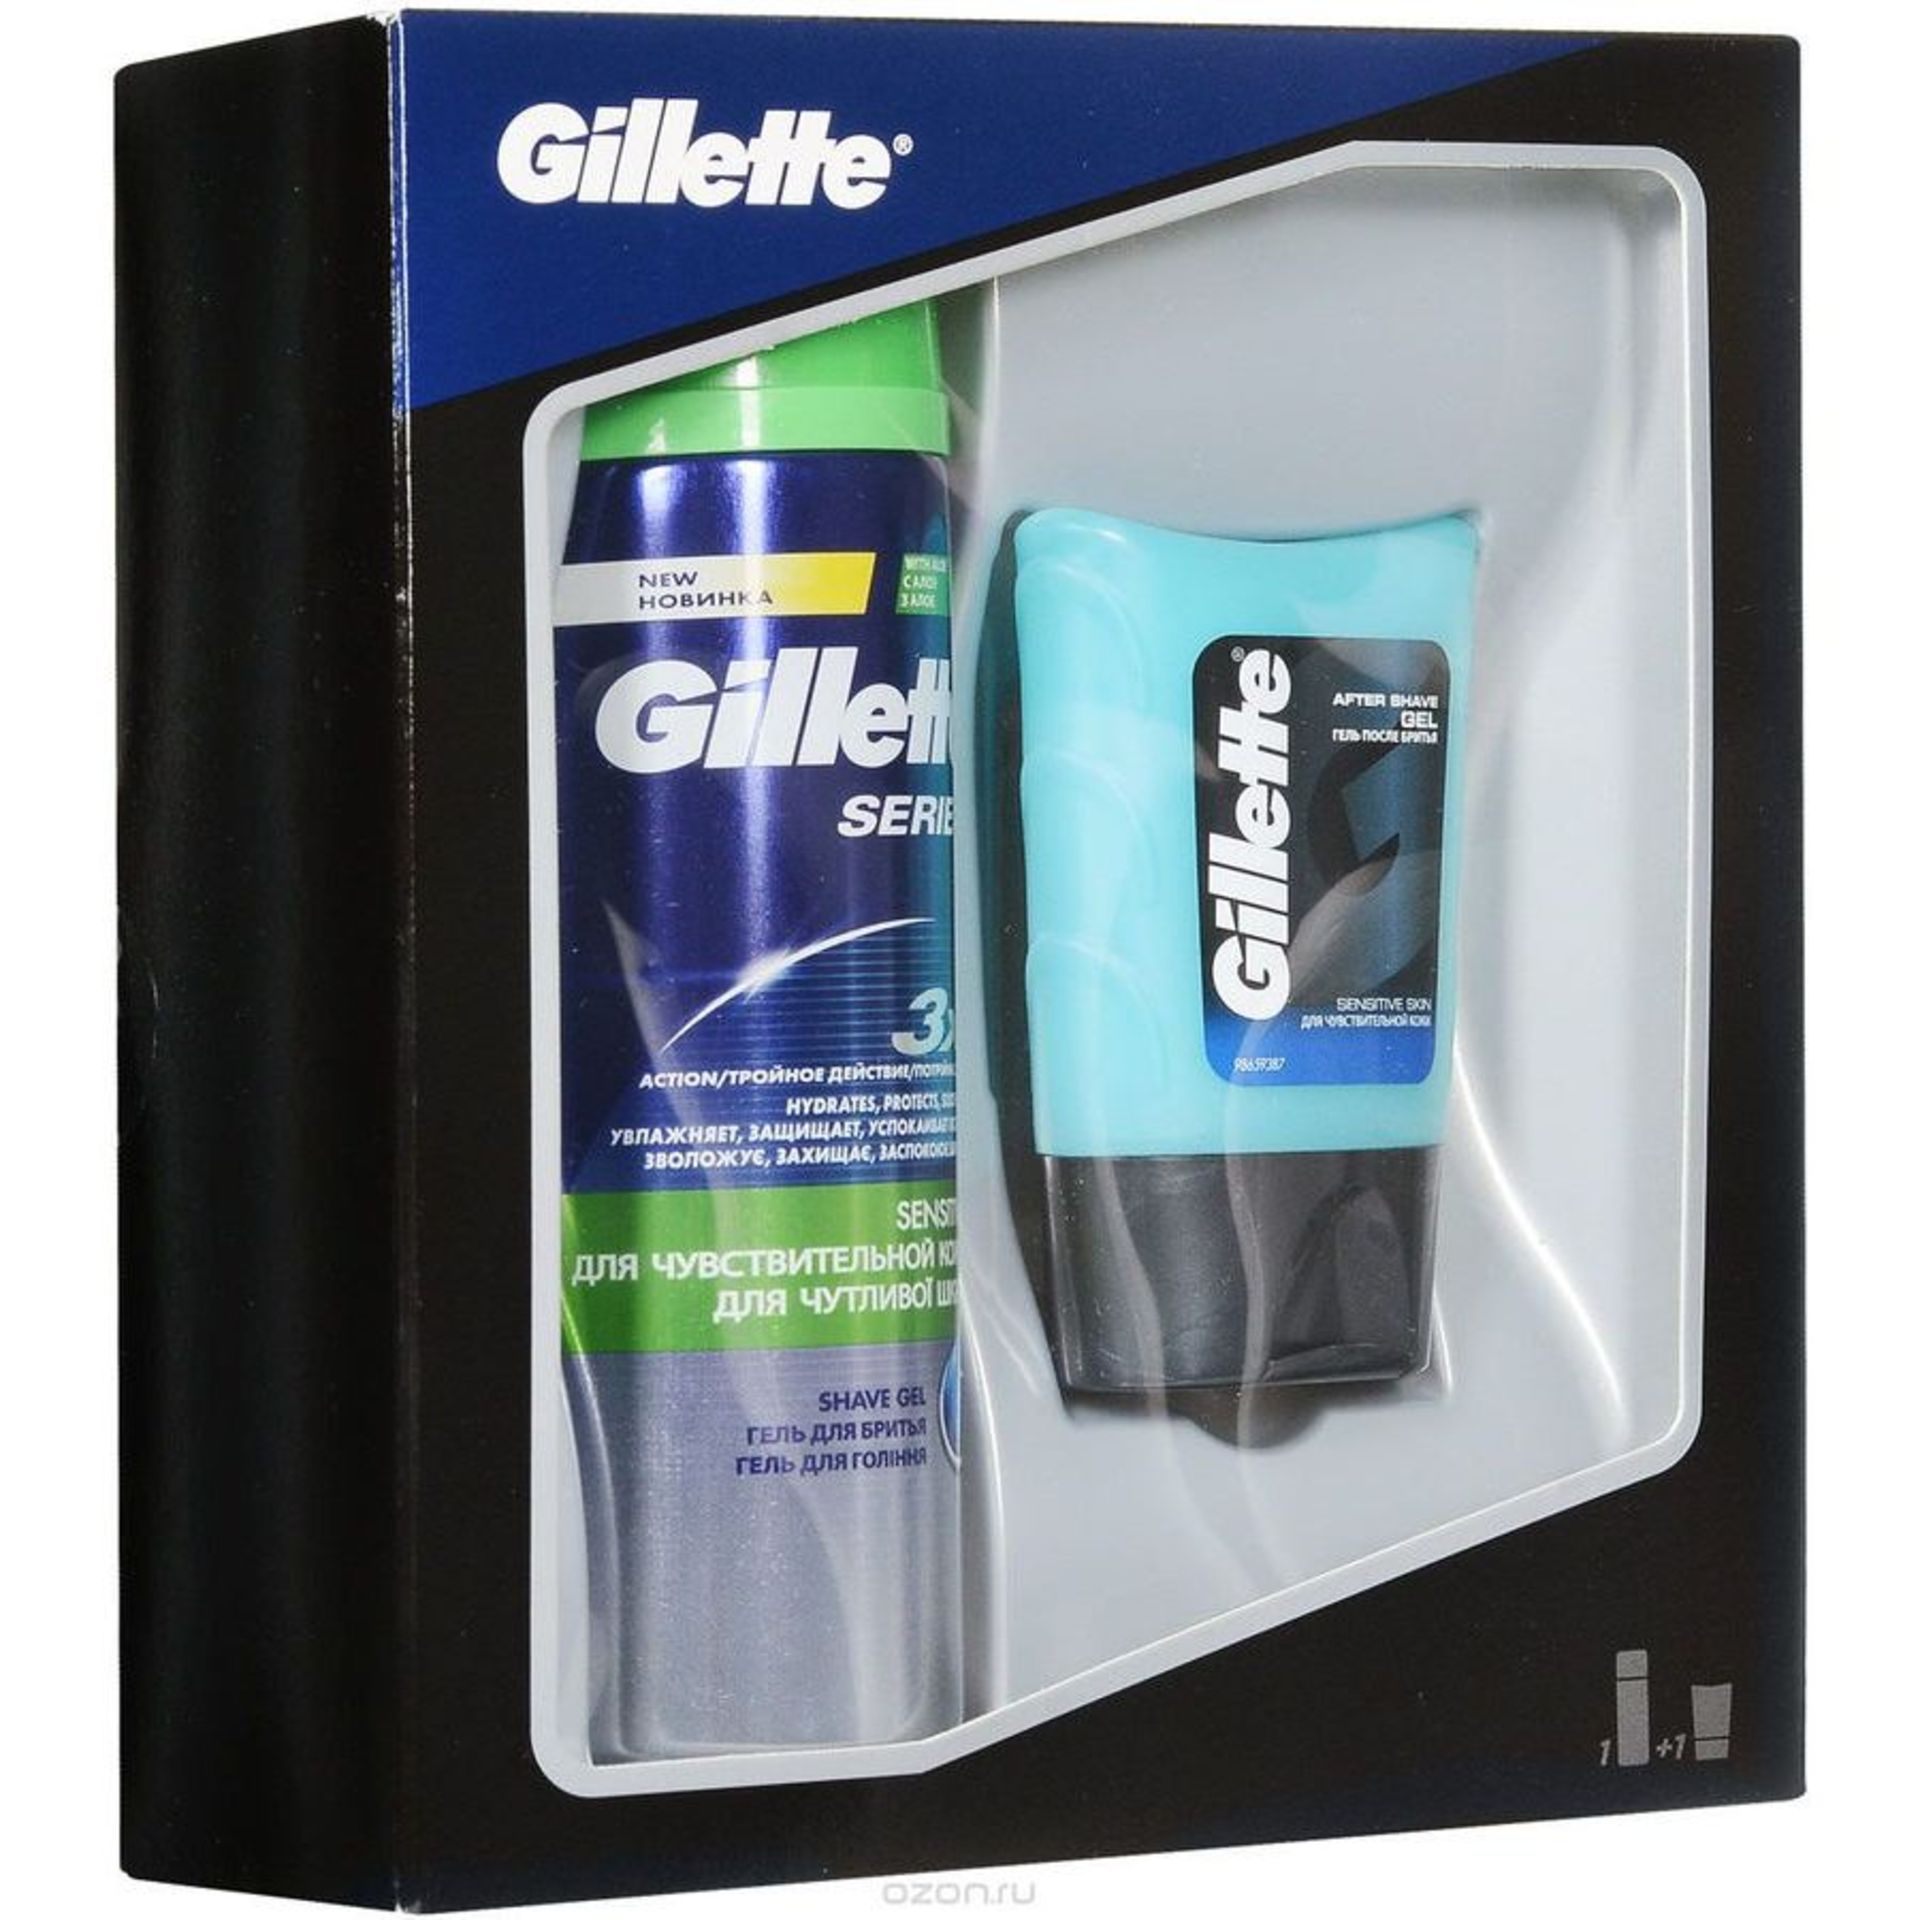 V Brand New Gillette Series Sensitive Shave Gel 200ml & Aftershave Gel For Sensitive Skin (75ml) X 2